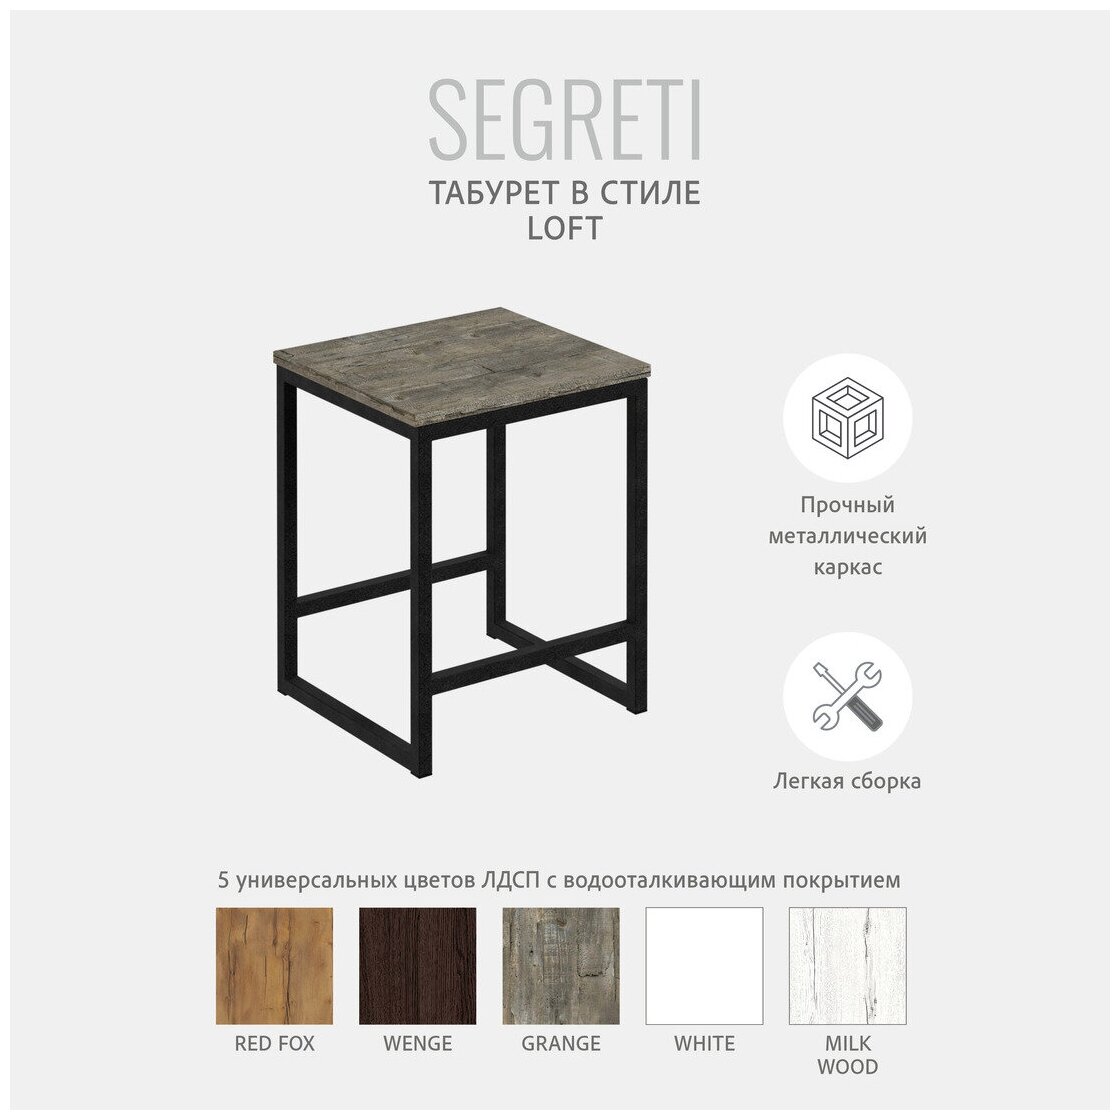 Табурет SEGRETI LOFT, серый, металлический, деревянный, мебель лофт, 37х35х45 см, Гростат - фотография № 2